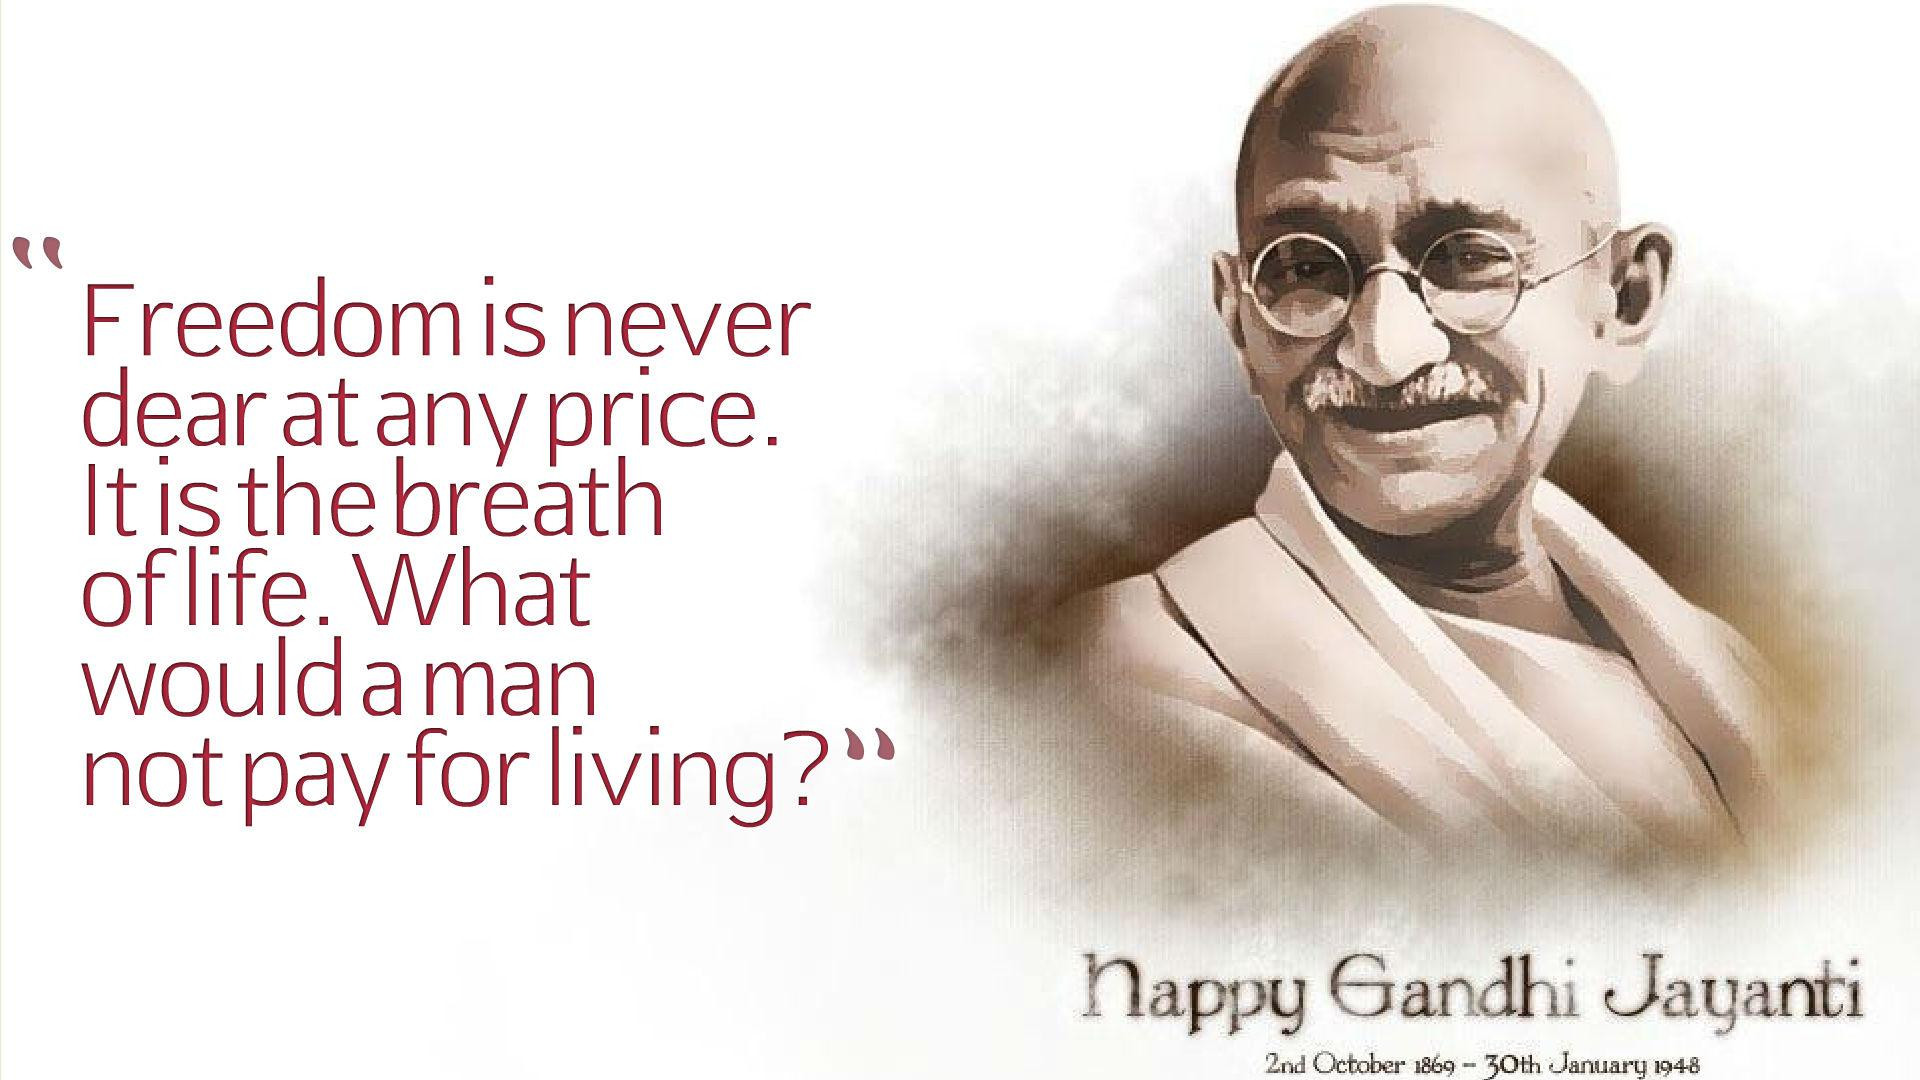 Mahatma Gandhi Quotes On Education
 Gandhi Quotes About Education QuotesGram